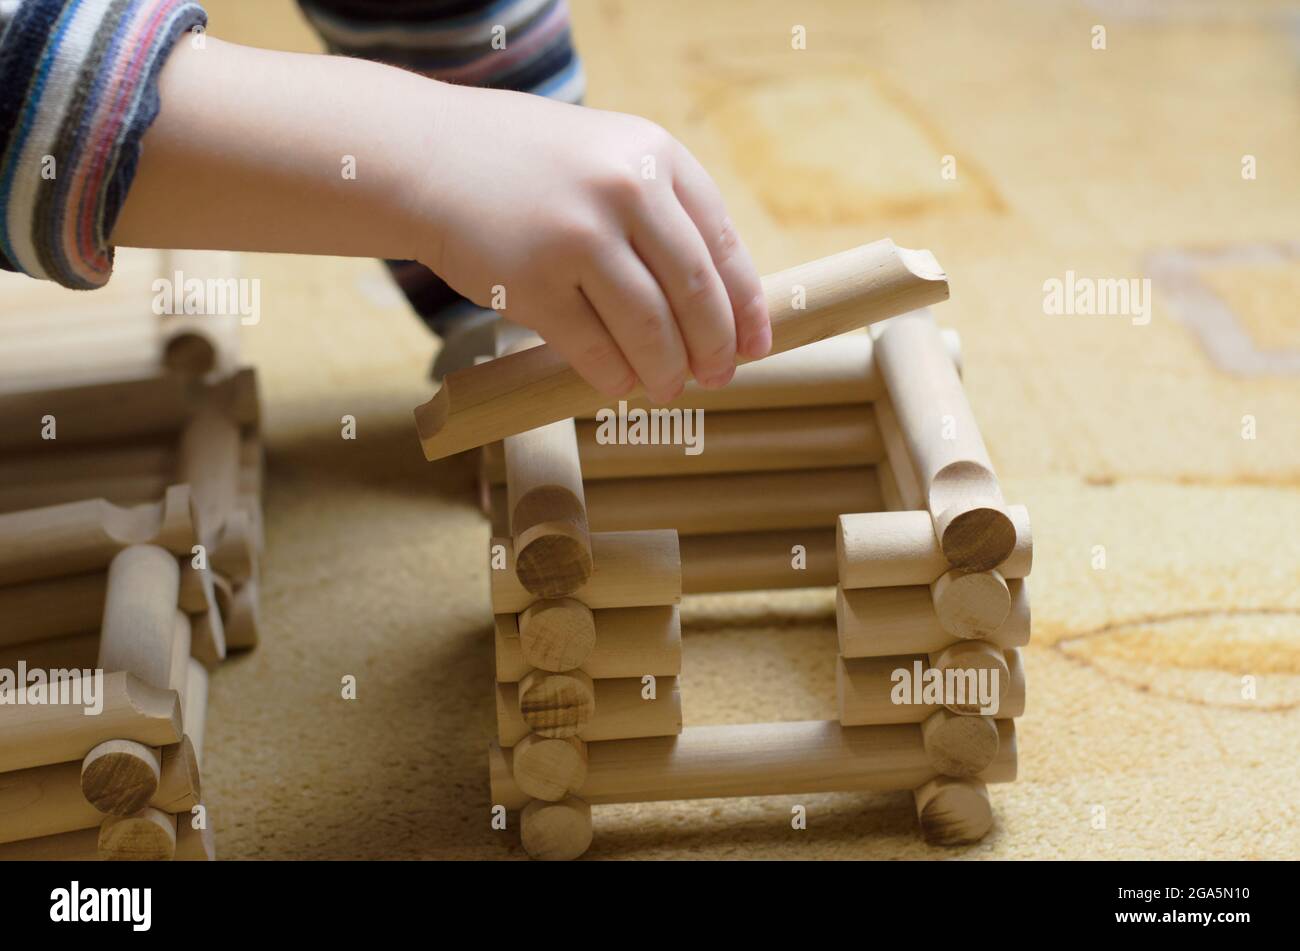 Les enfants jouent avec un ensemble de construction en bois Banque D'Images